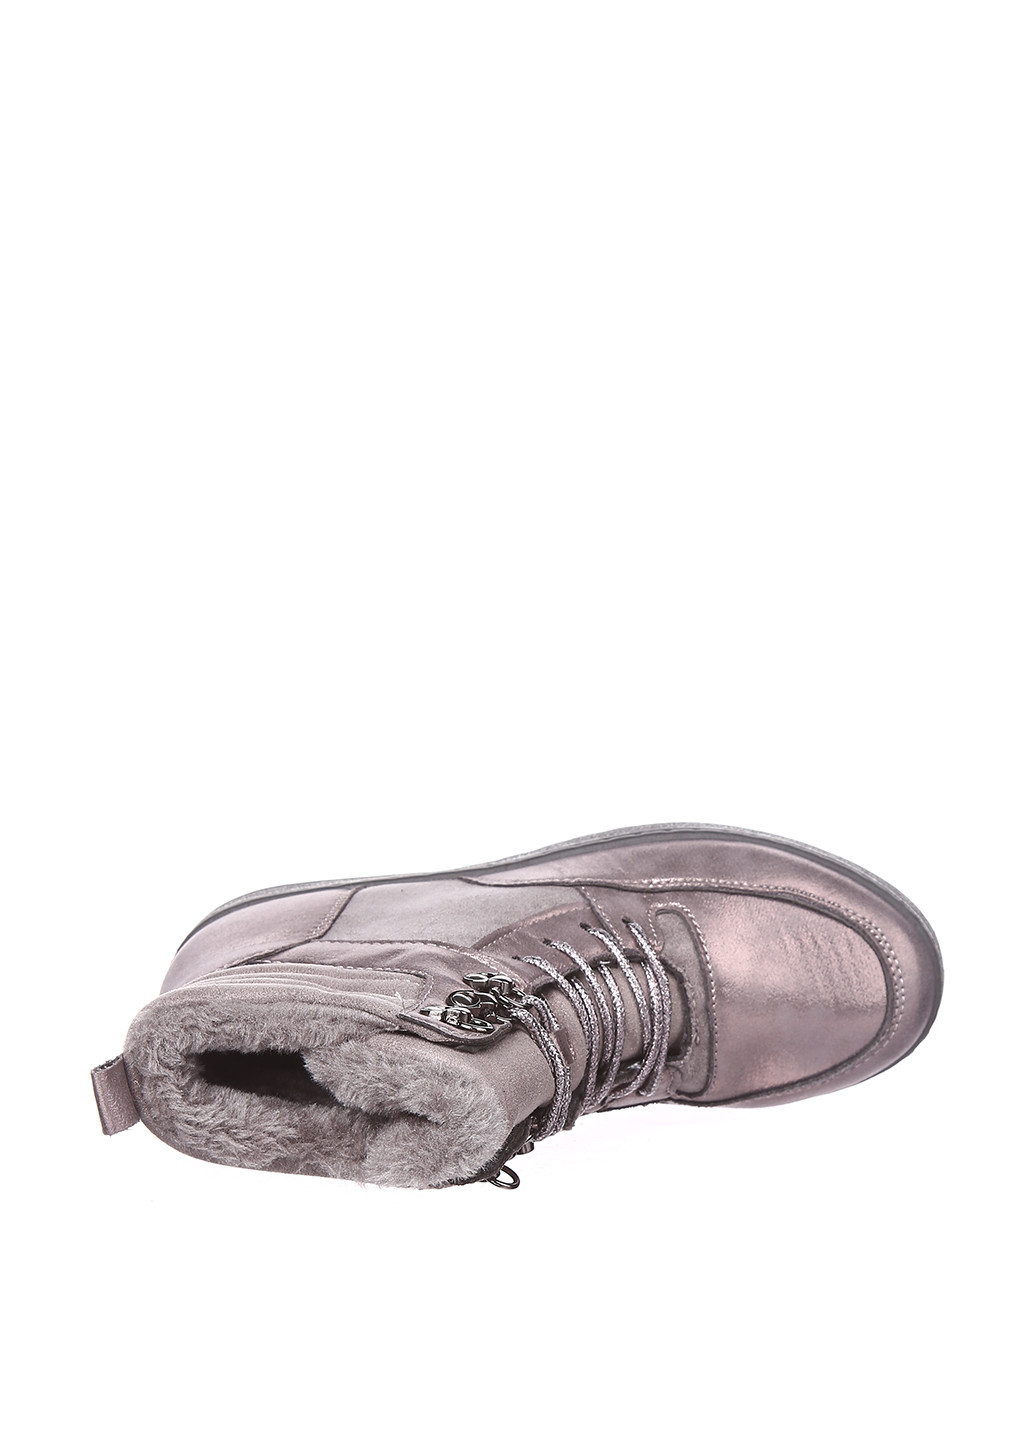 Осенние ботинки Sopra без декора из искусственной кожи